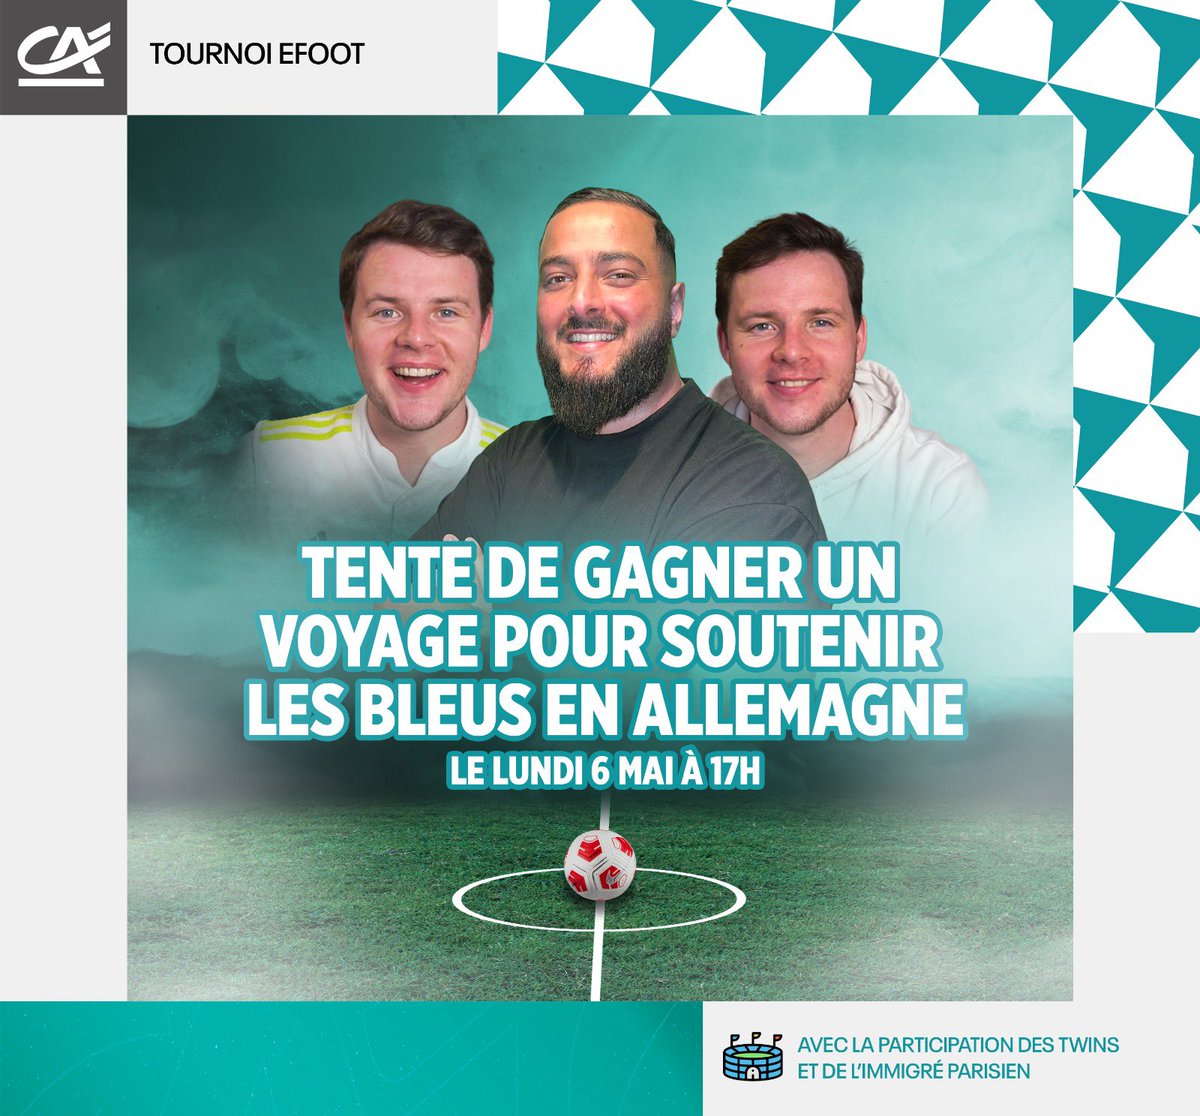 🚨 On organise un tournoi spécial sur FC24 pour aller soutenir directement les Bleus cet été pour leur premier match à Düsseldorf le 17 juin ! 🙌🏼
Pour s’inscrire c’est super simple et gratuit il suffit de rejoindre le discord « Shortcut » du @CreditAgricole ! 👇🏻